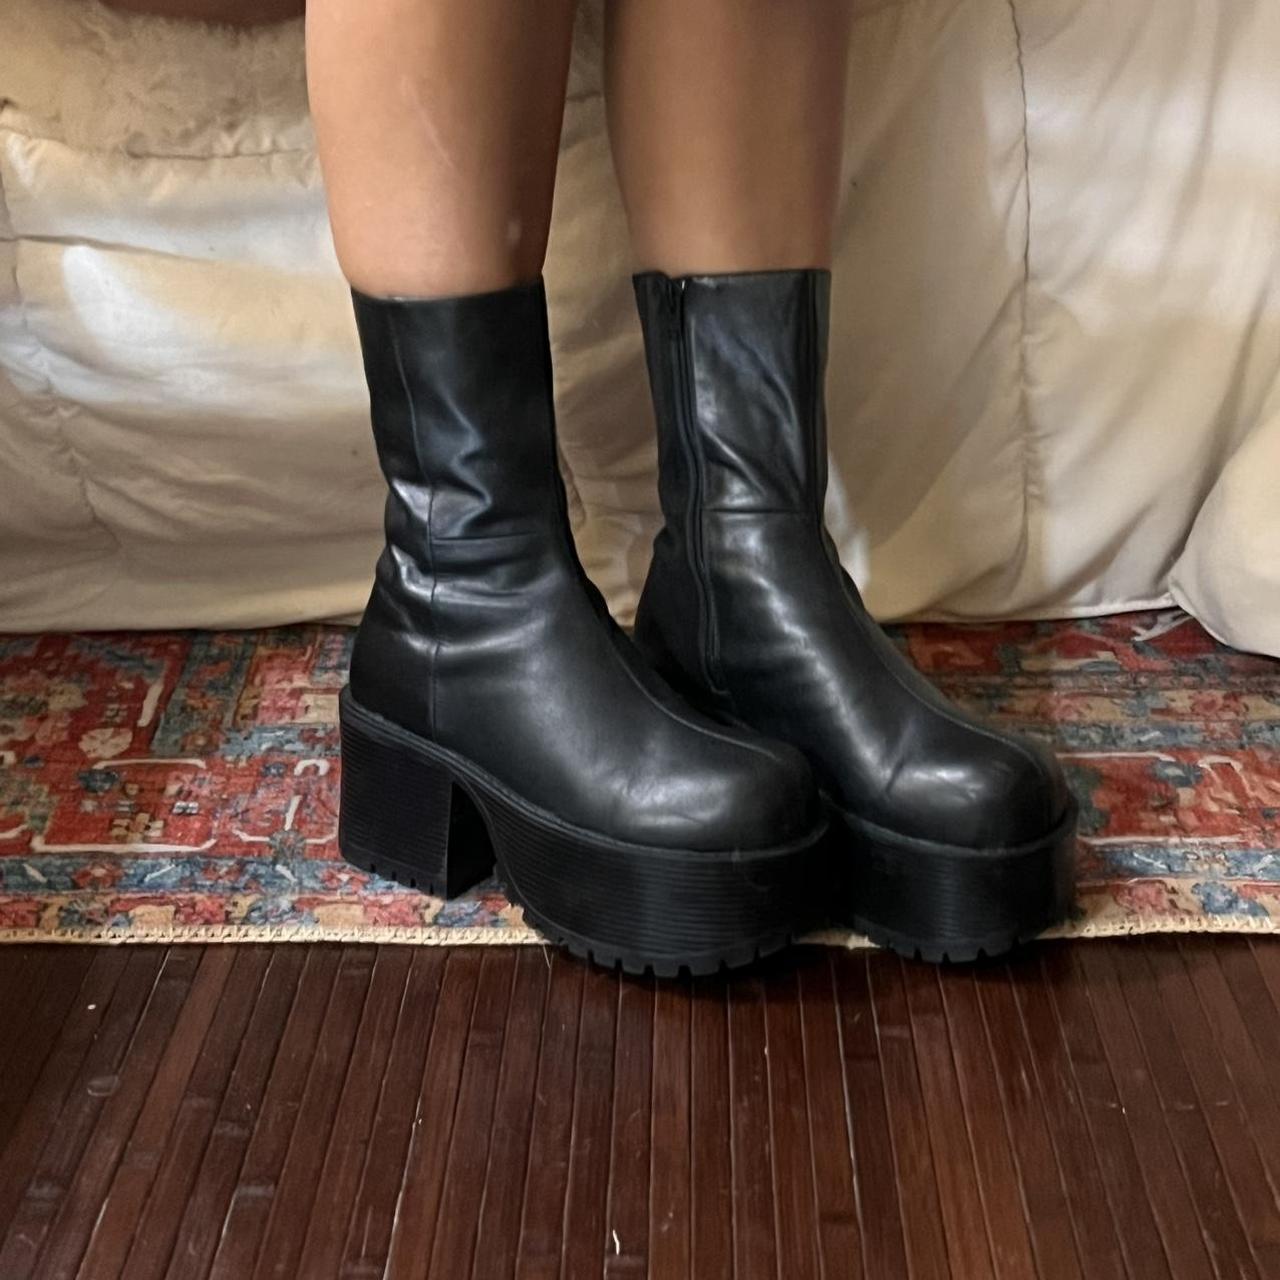 unif slug boots matte black. worn once size 9. in... - Depop